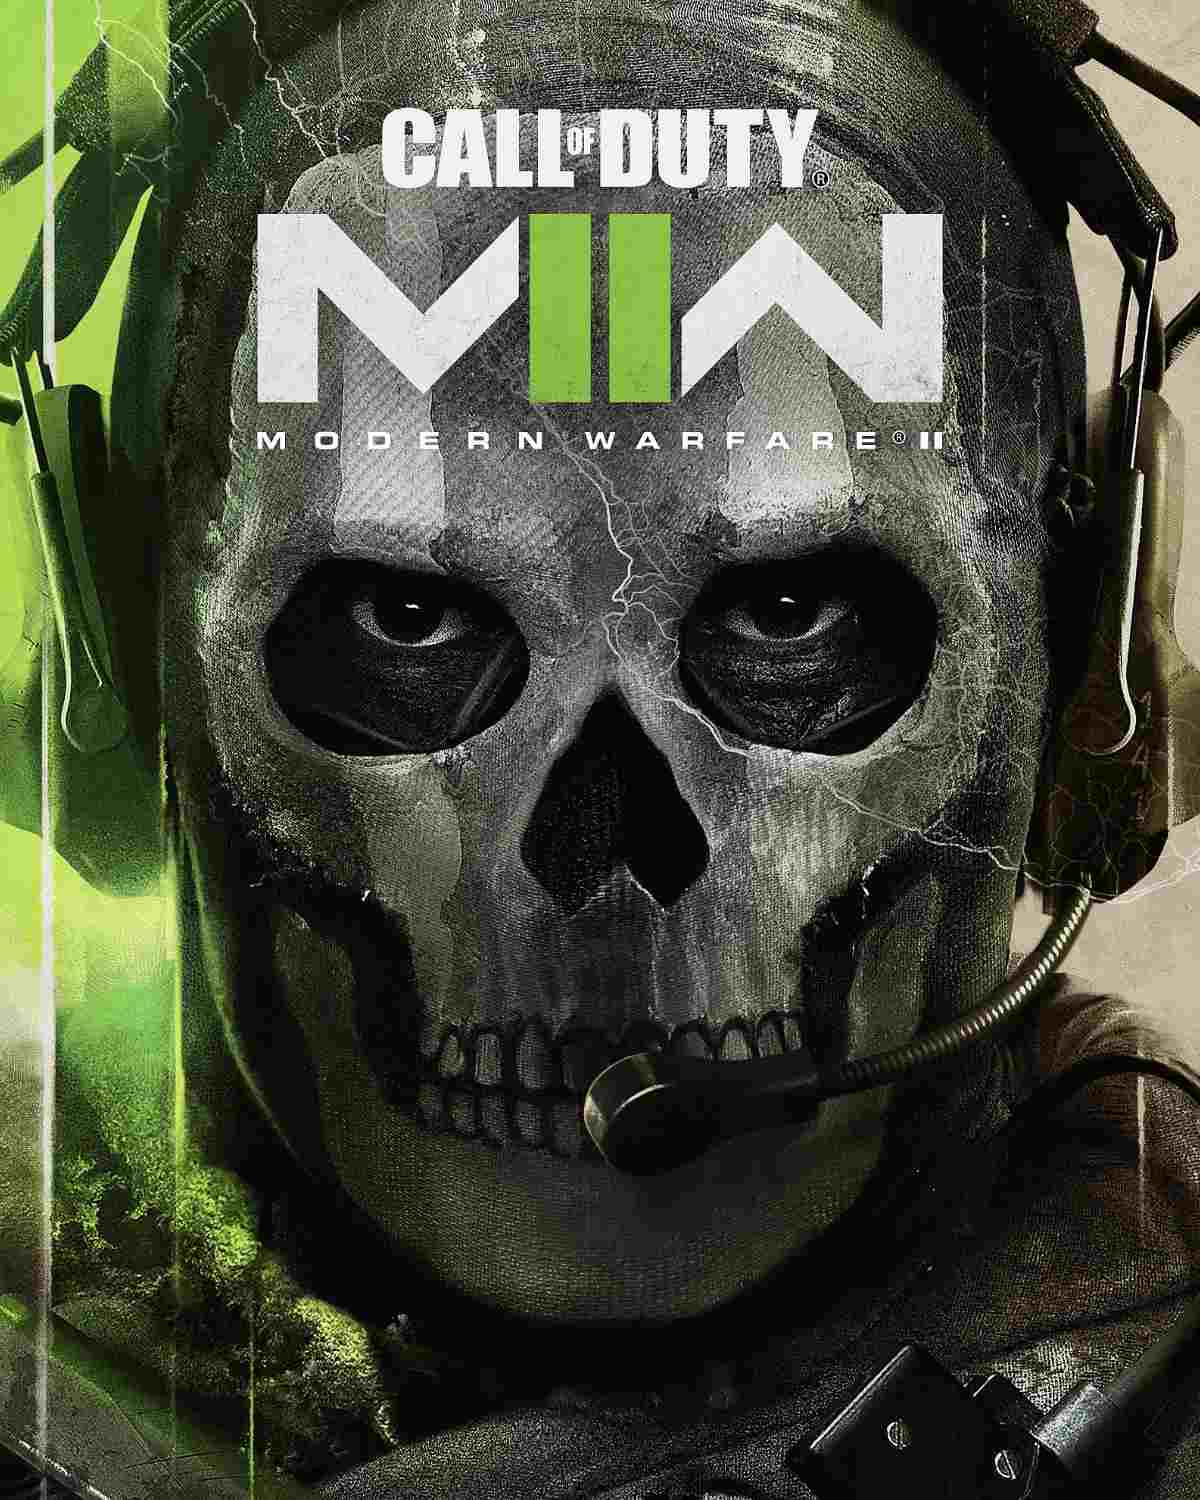 »Call of Duty: Modern Warfare 2« – Düstere Kriegsfantasie